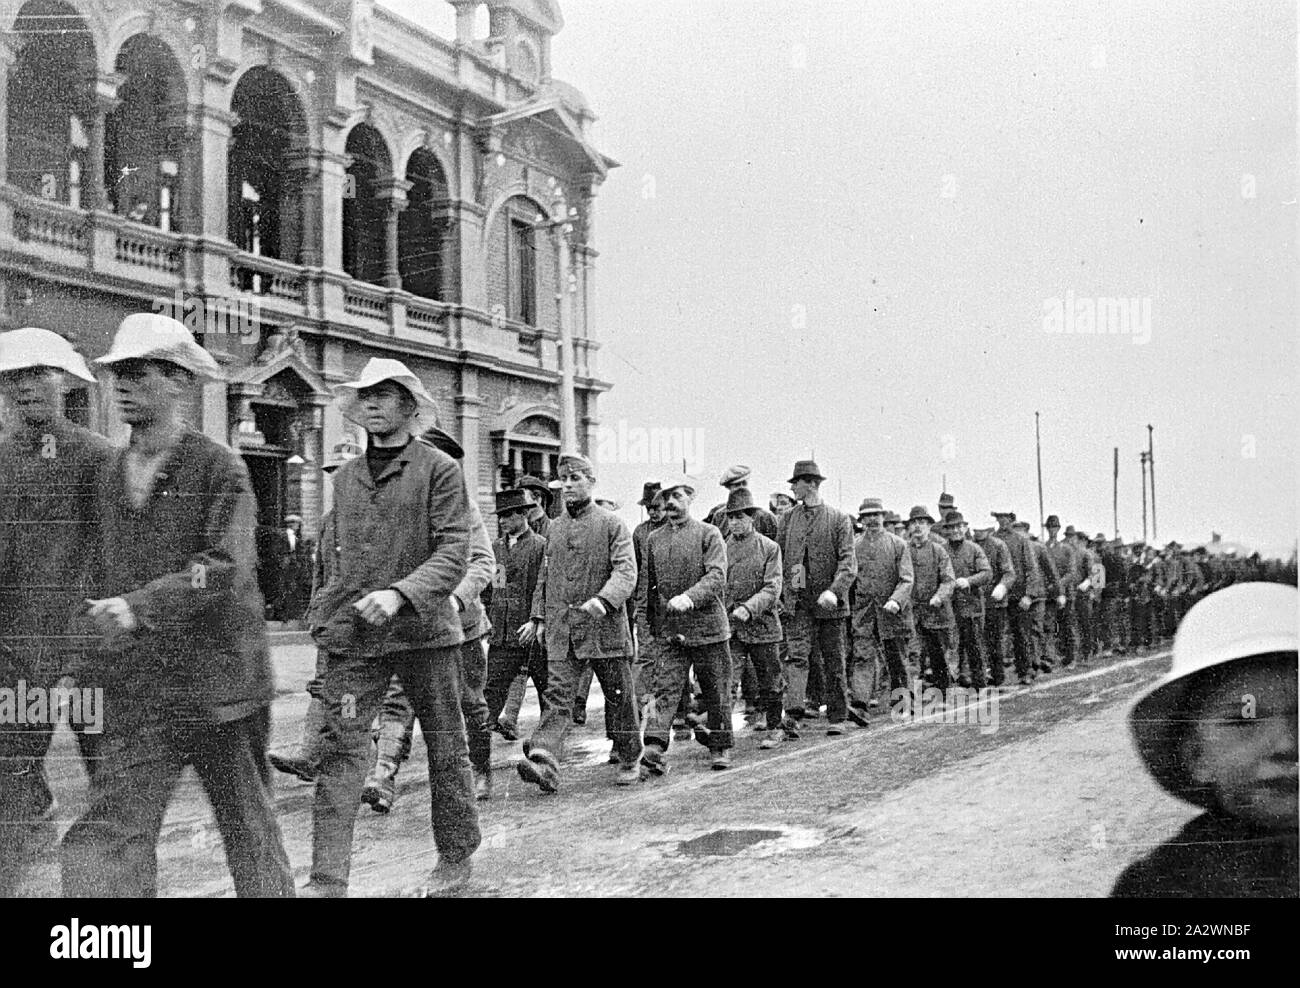 Negative - Soldaten der Australischen Armee Service Corps Marching, Royal Park, Victoria, Aug 1916, Soldaten der Australischen Armee Service Corps marschieren. Sie sind ähnlich gekleidet, aber nicht in der regulären Armee Uniform und eine Vielzahl von Hüte tragen Stockfoto